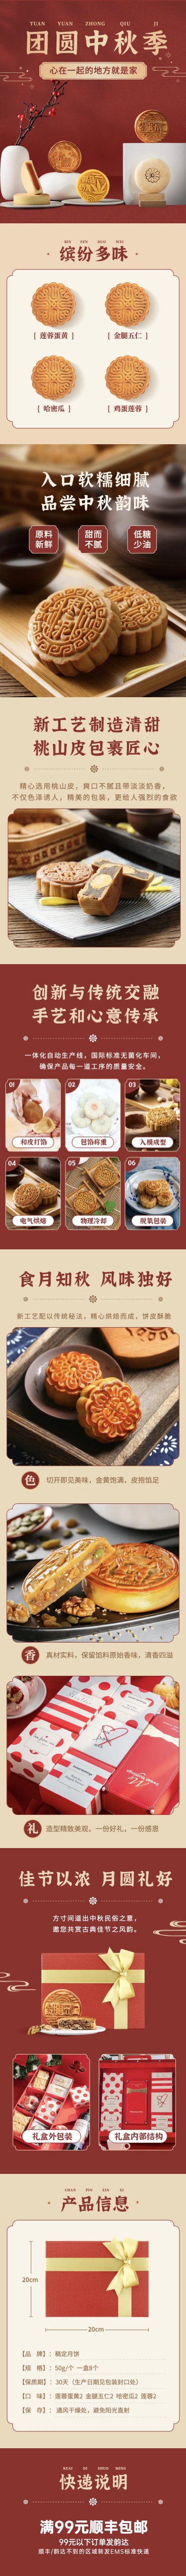 中秋节食品月饼详情页预览效果